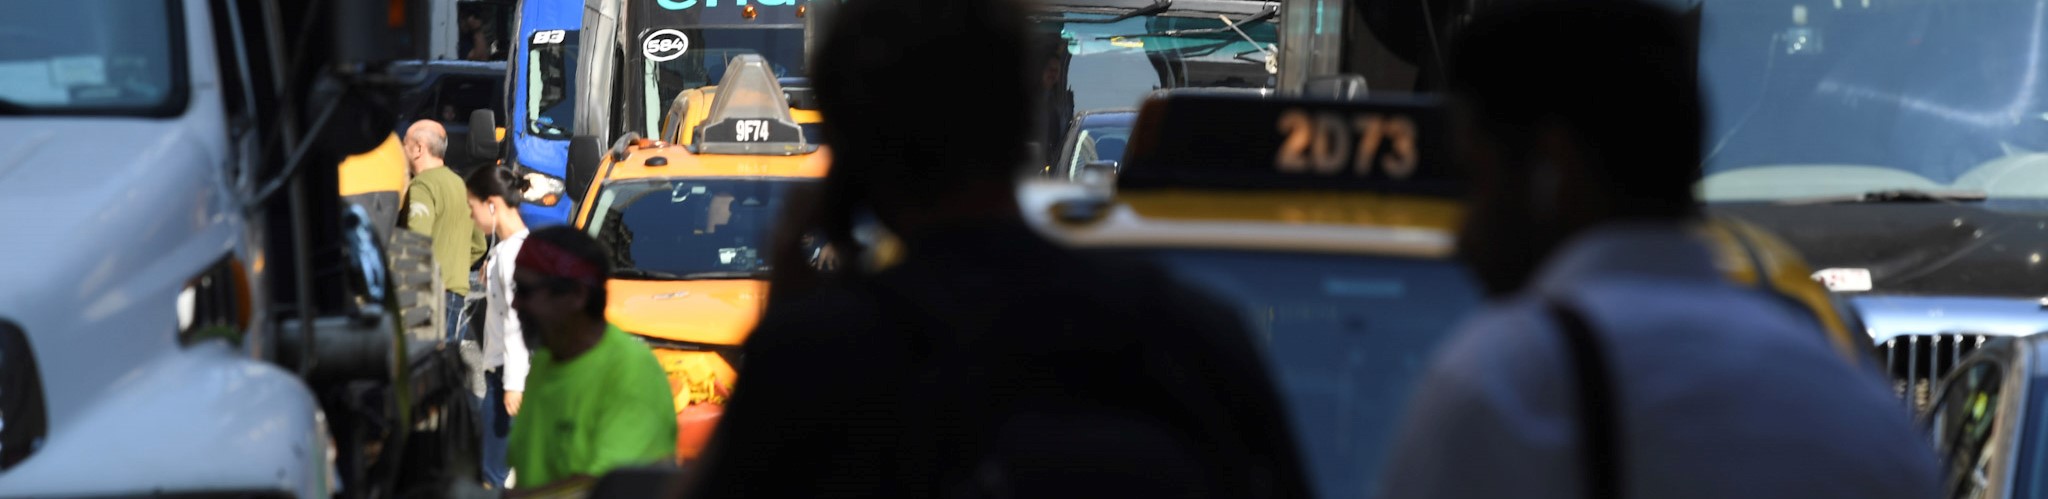 Pedestrians walk around vehicles stuck in traffic in Midtown Manhattan